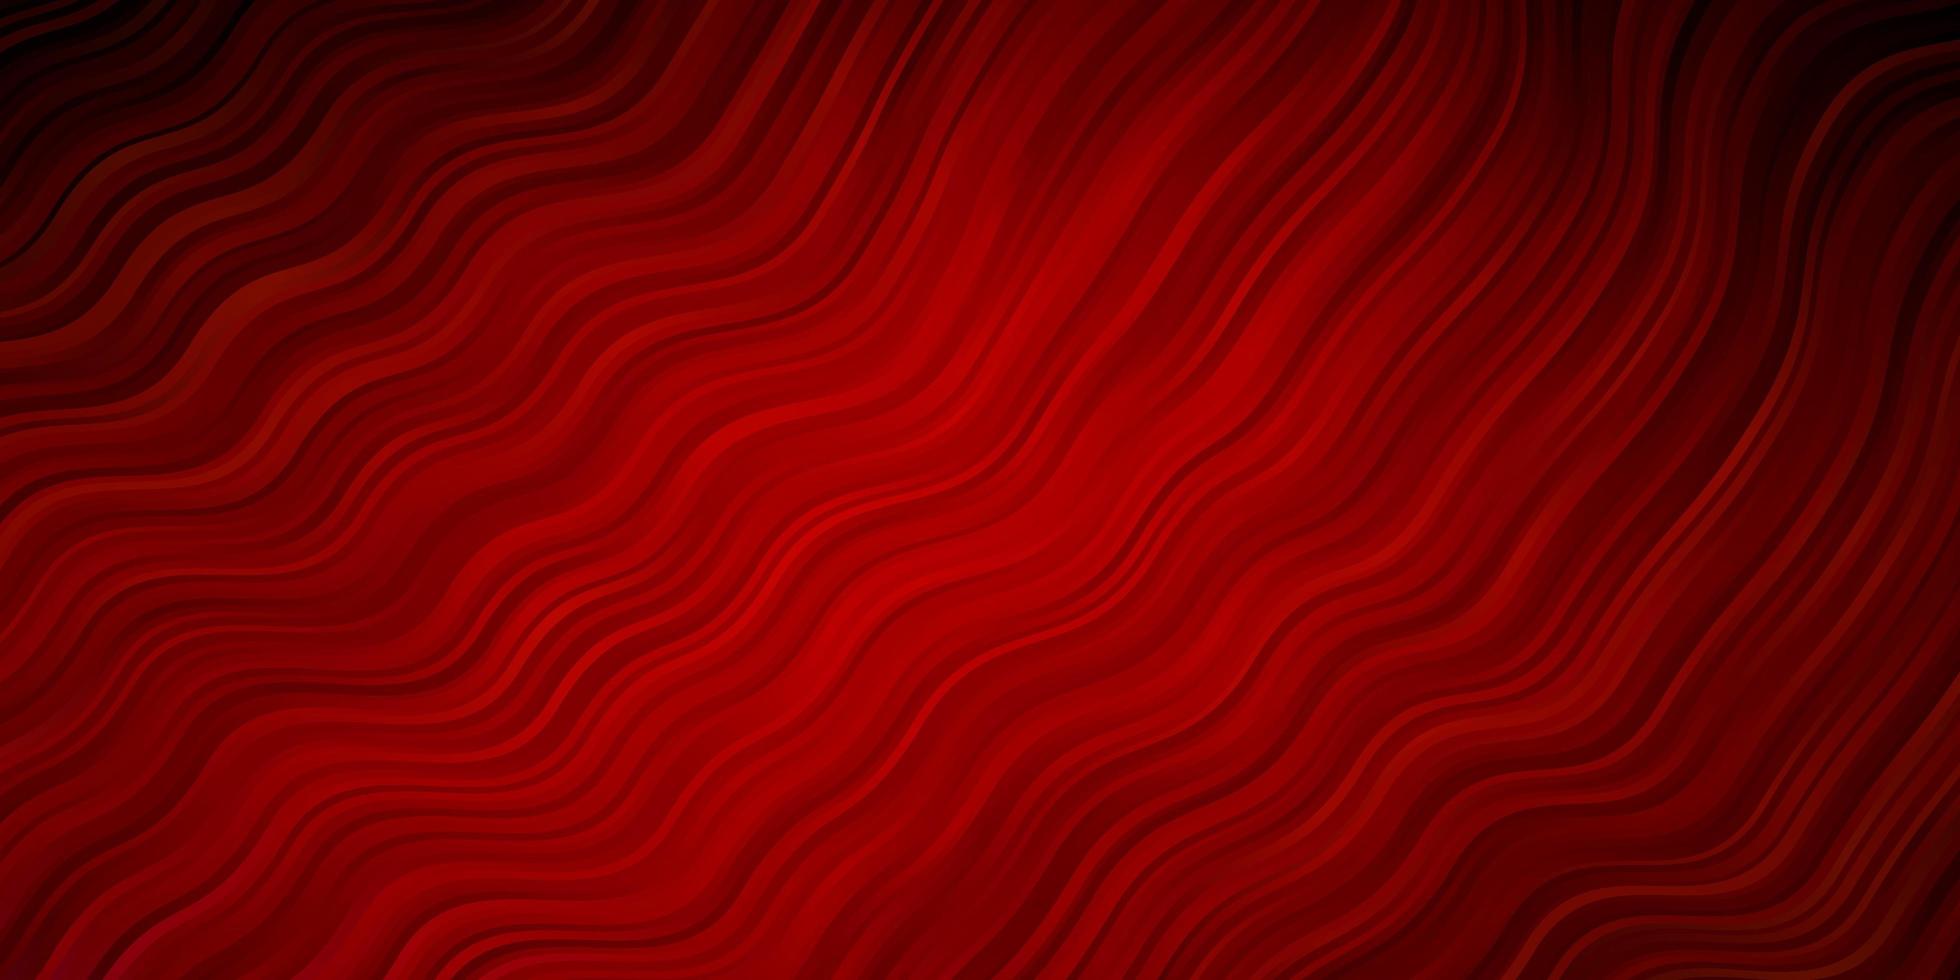 fundo vector vermelho escuro com curvas